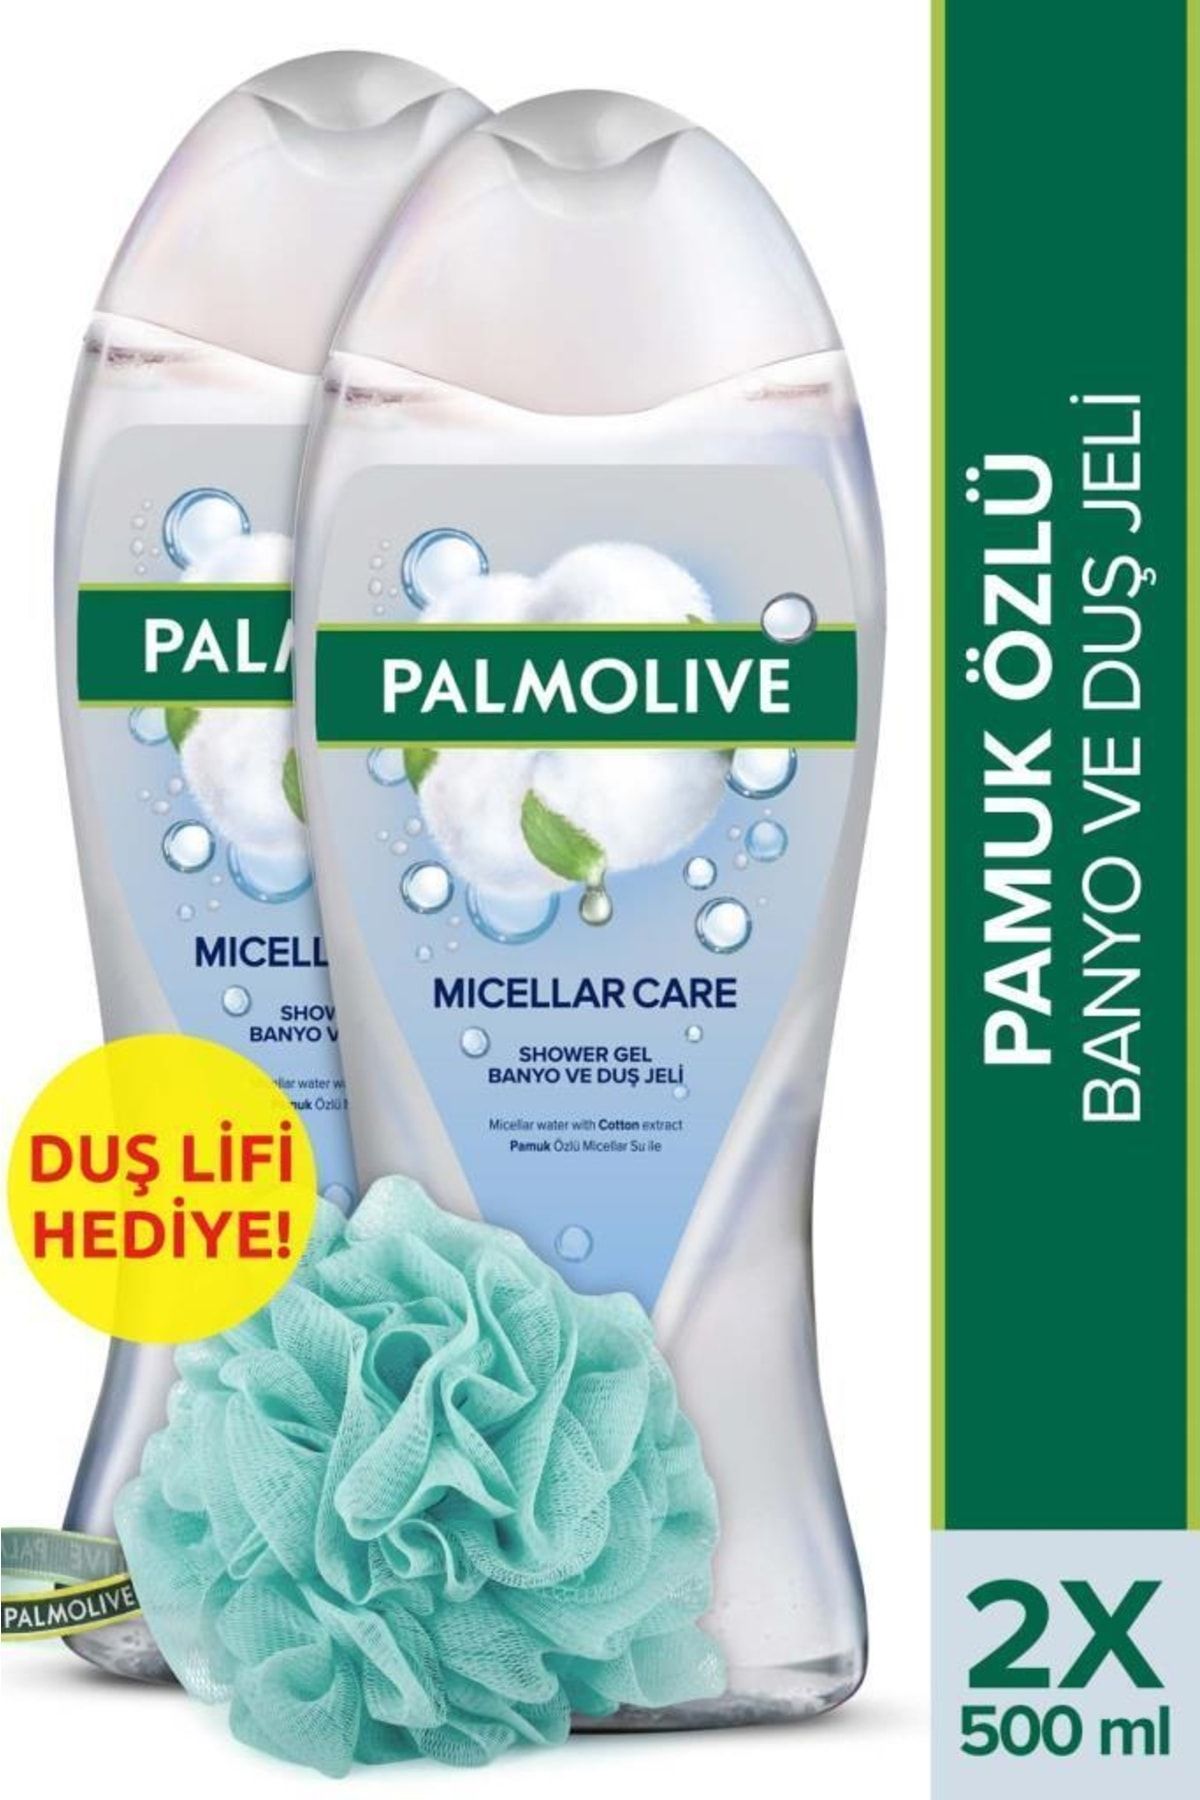 Palmolive Micellar Care Pamuk Özlü Banyo ve Duş Jeli 500 ml x 2 Adet + Duş Lifi Hediye